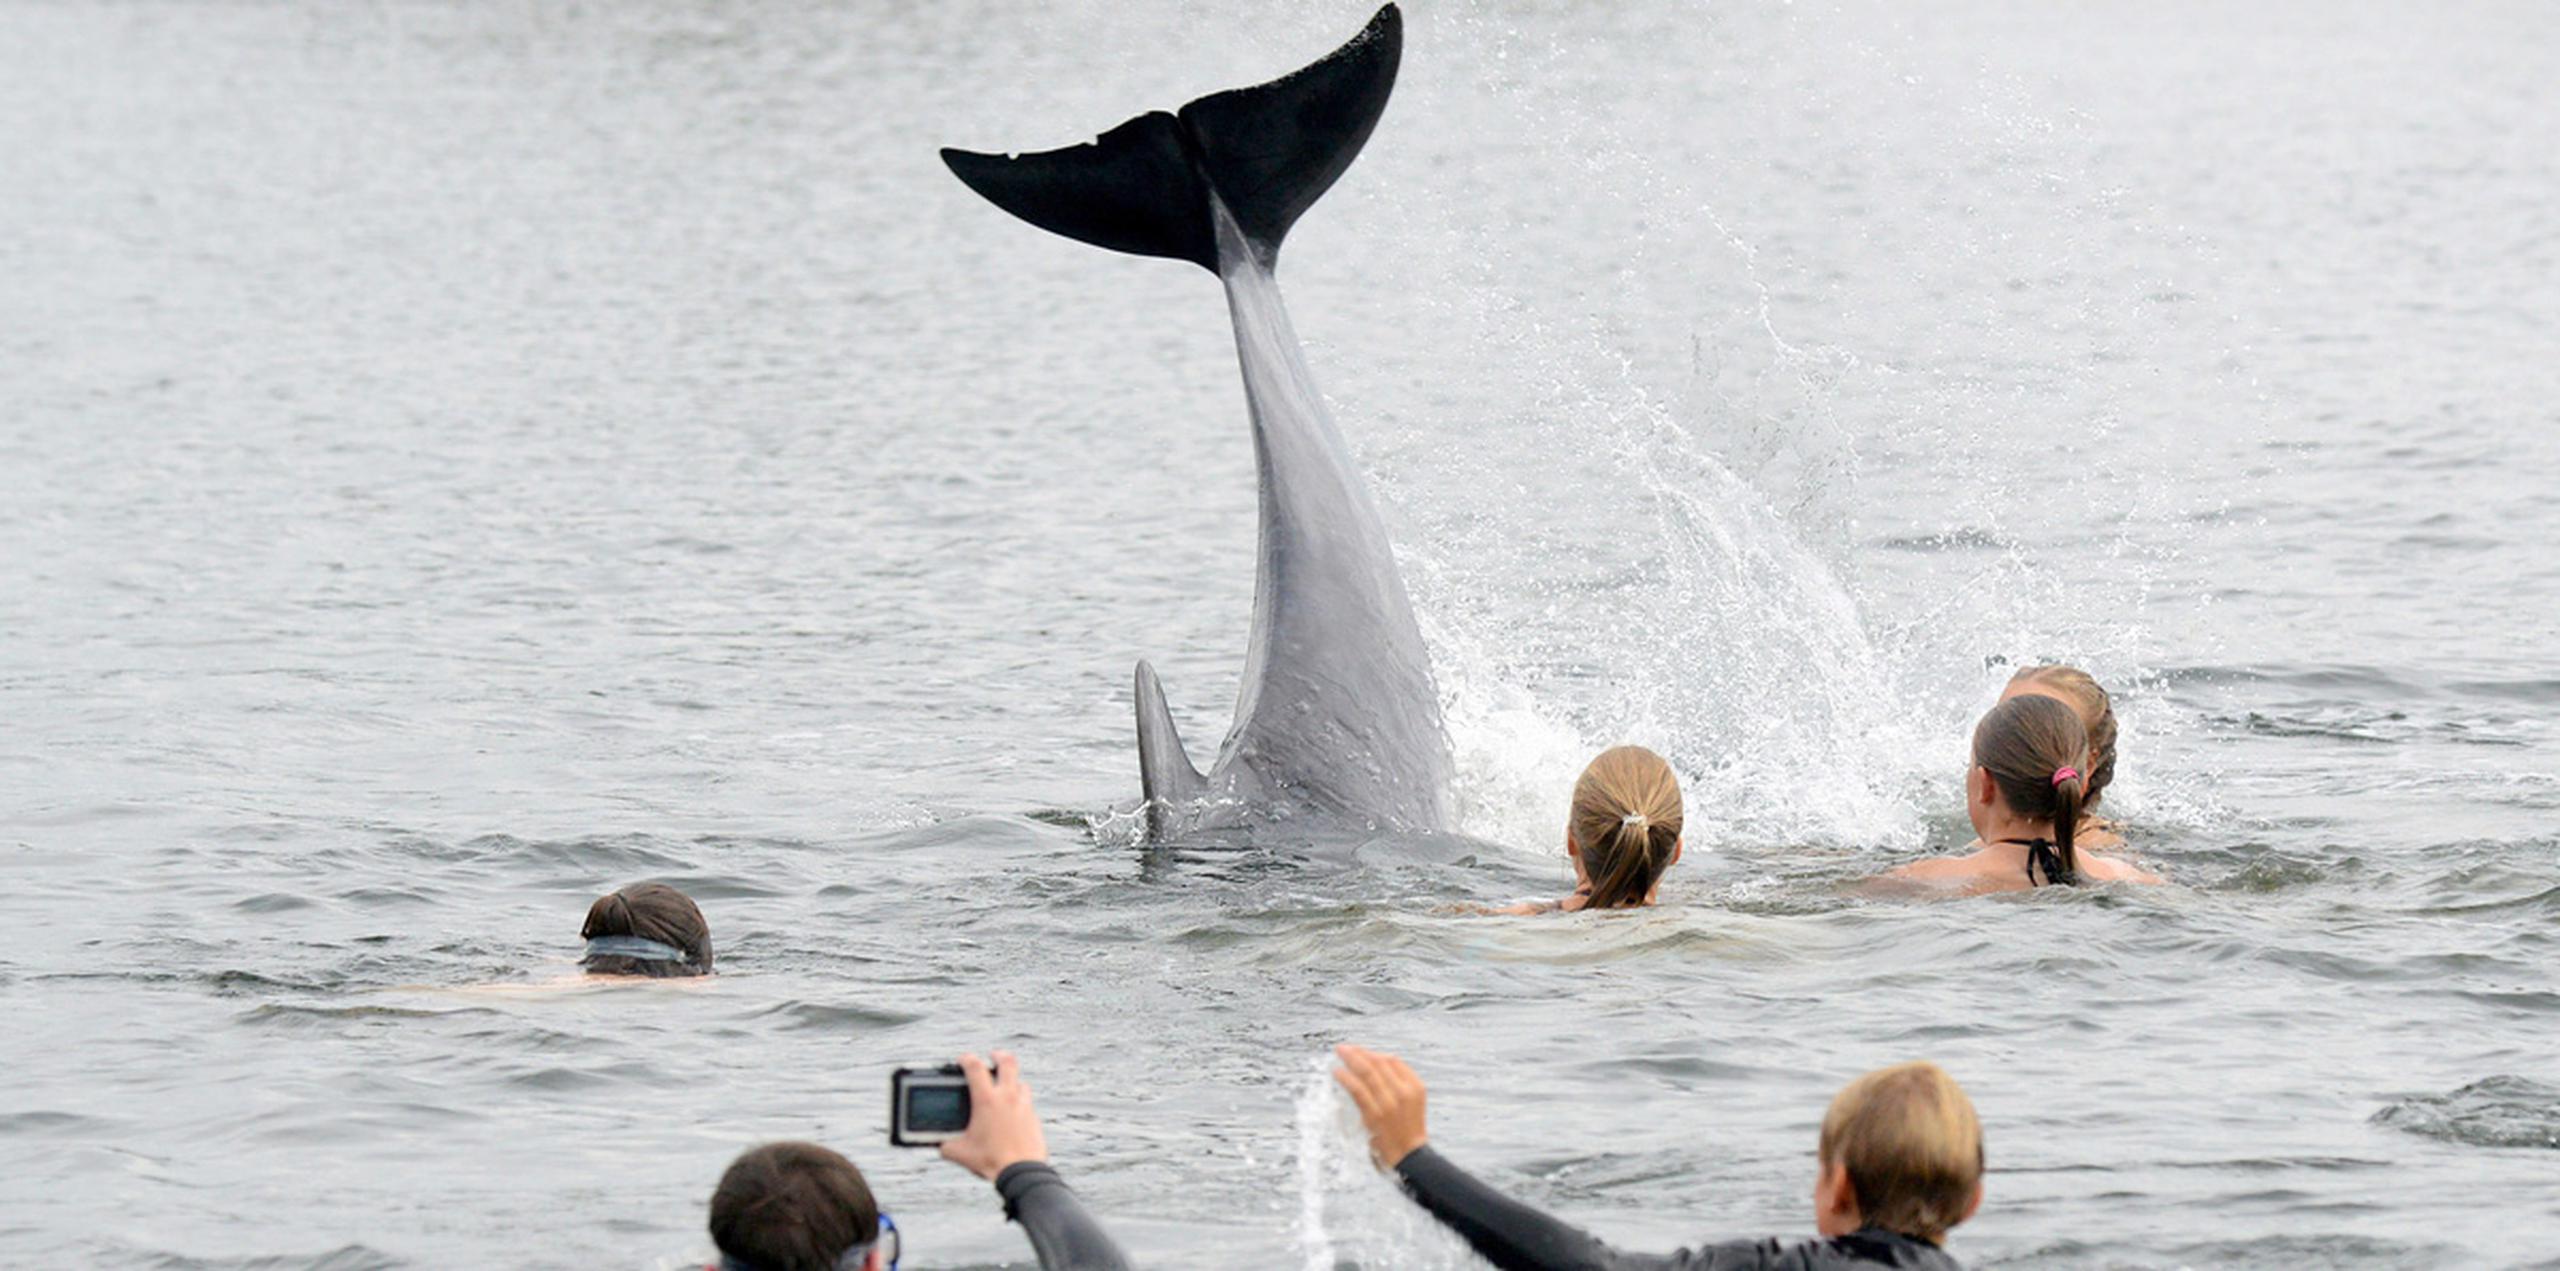 Varios bañistas se han lanzado al agua para tocar al delfín, aunque la policía advirtió que el animal podría sentirse acosado por esa práctica. (AP)